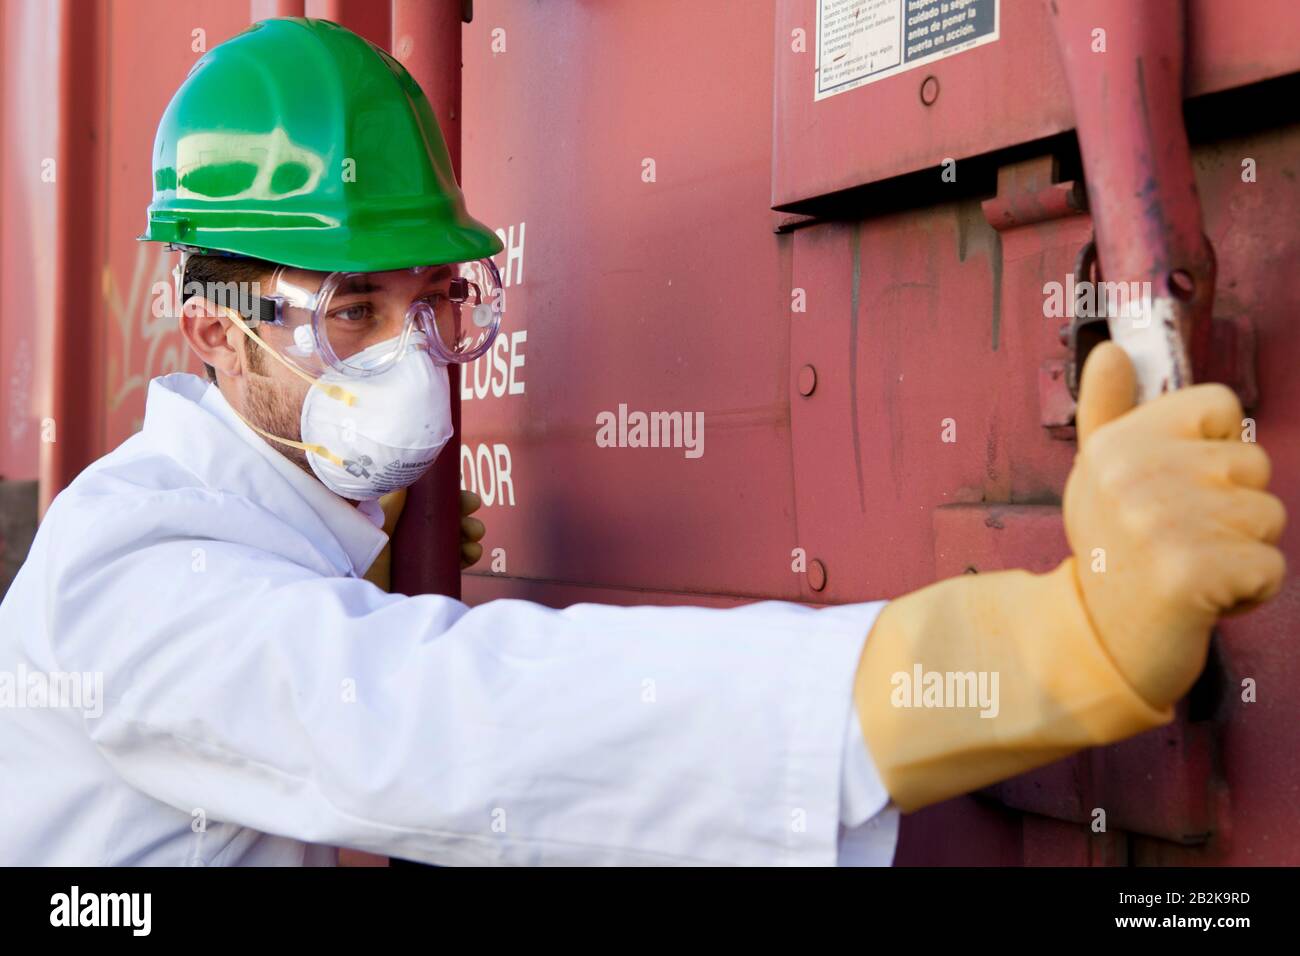 Worker in hazmat suit, hard-hat and face mask closing metal door Stock Photo